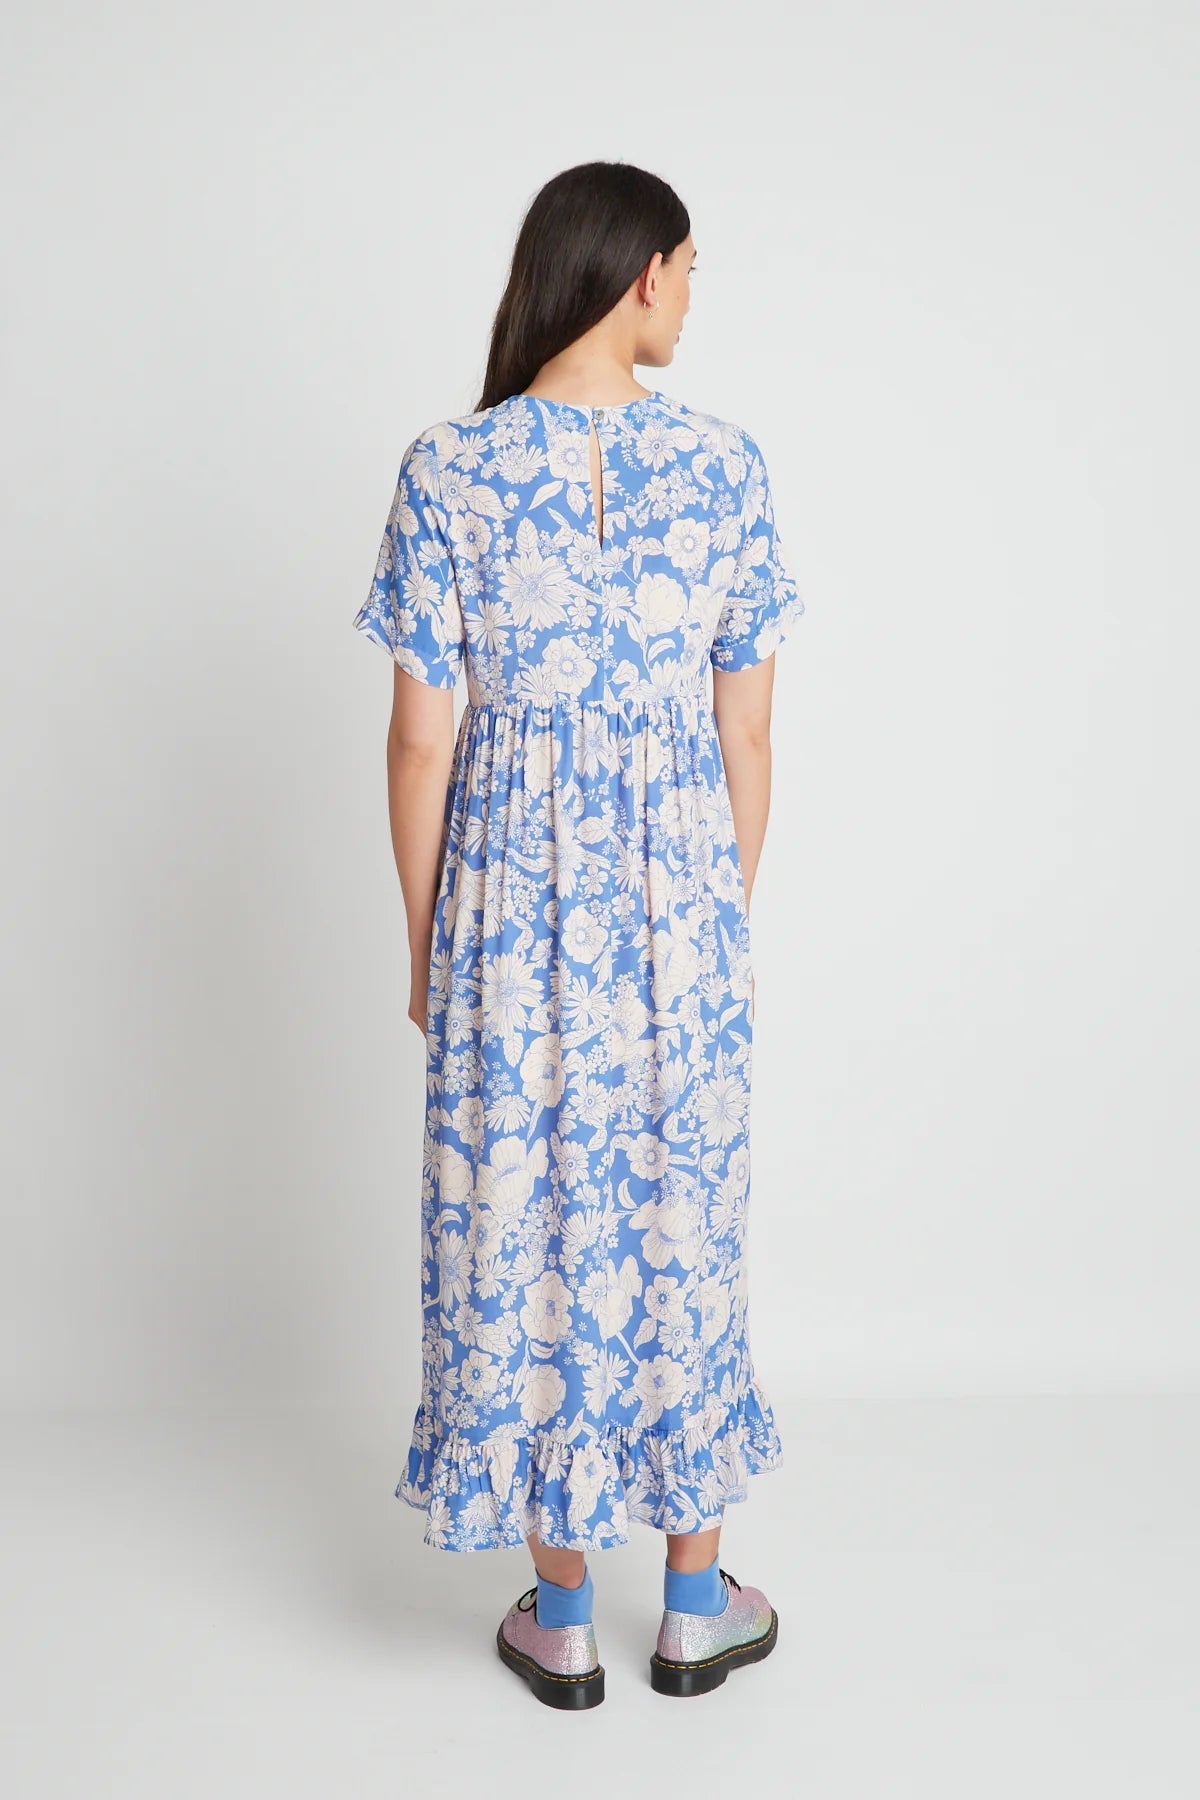 twenty-seven names | At Last Dress | Blue Stencil Floral | Palm Boutique